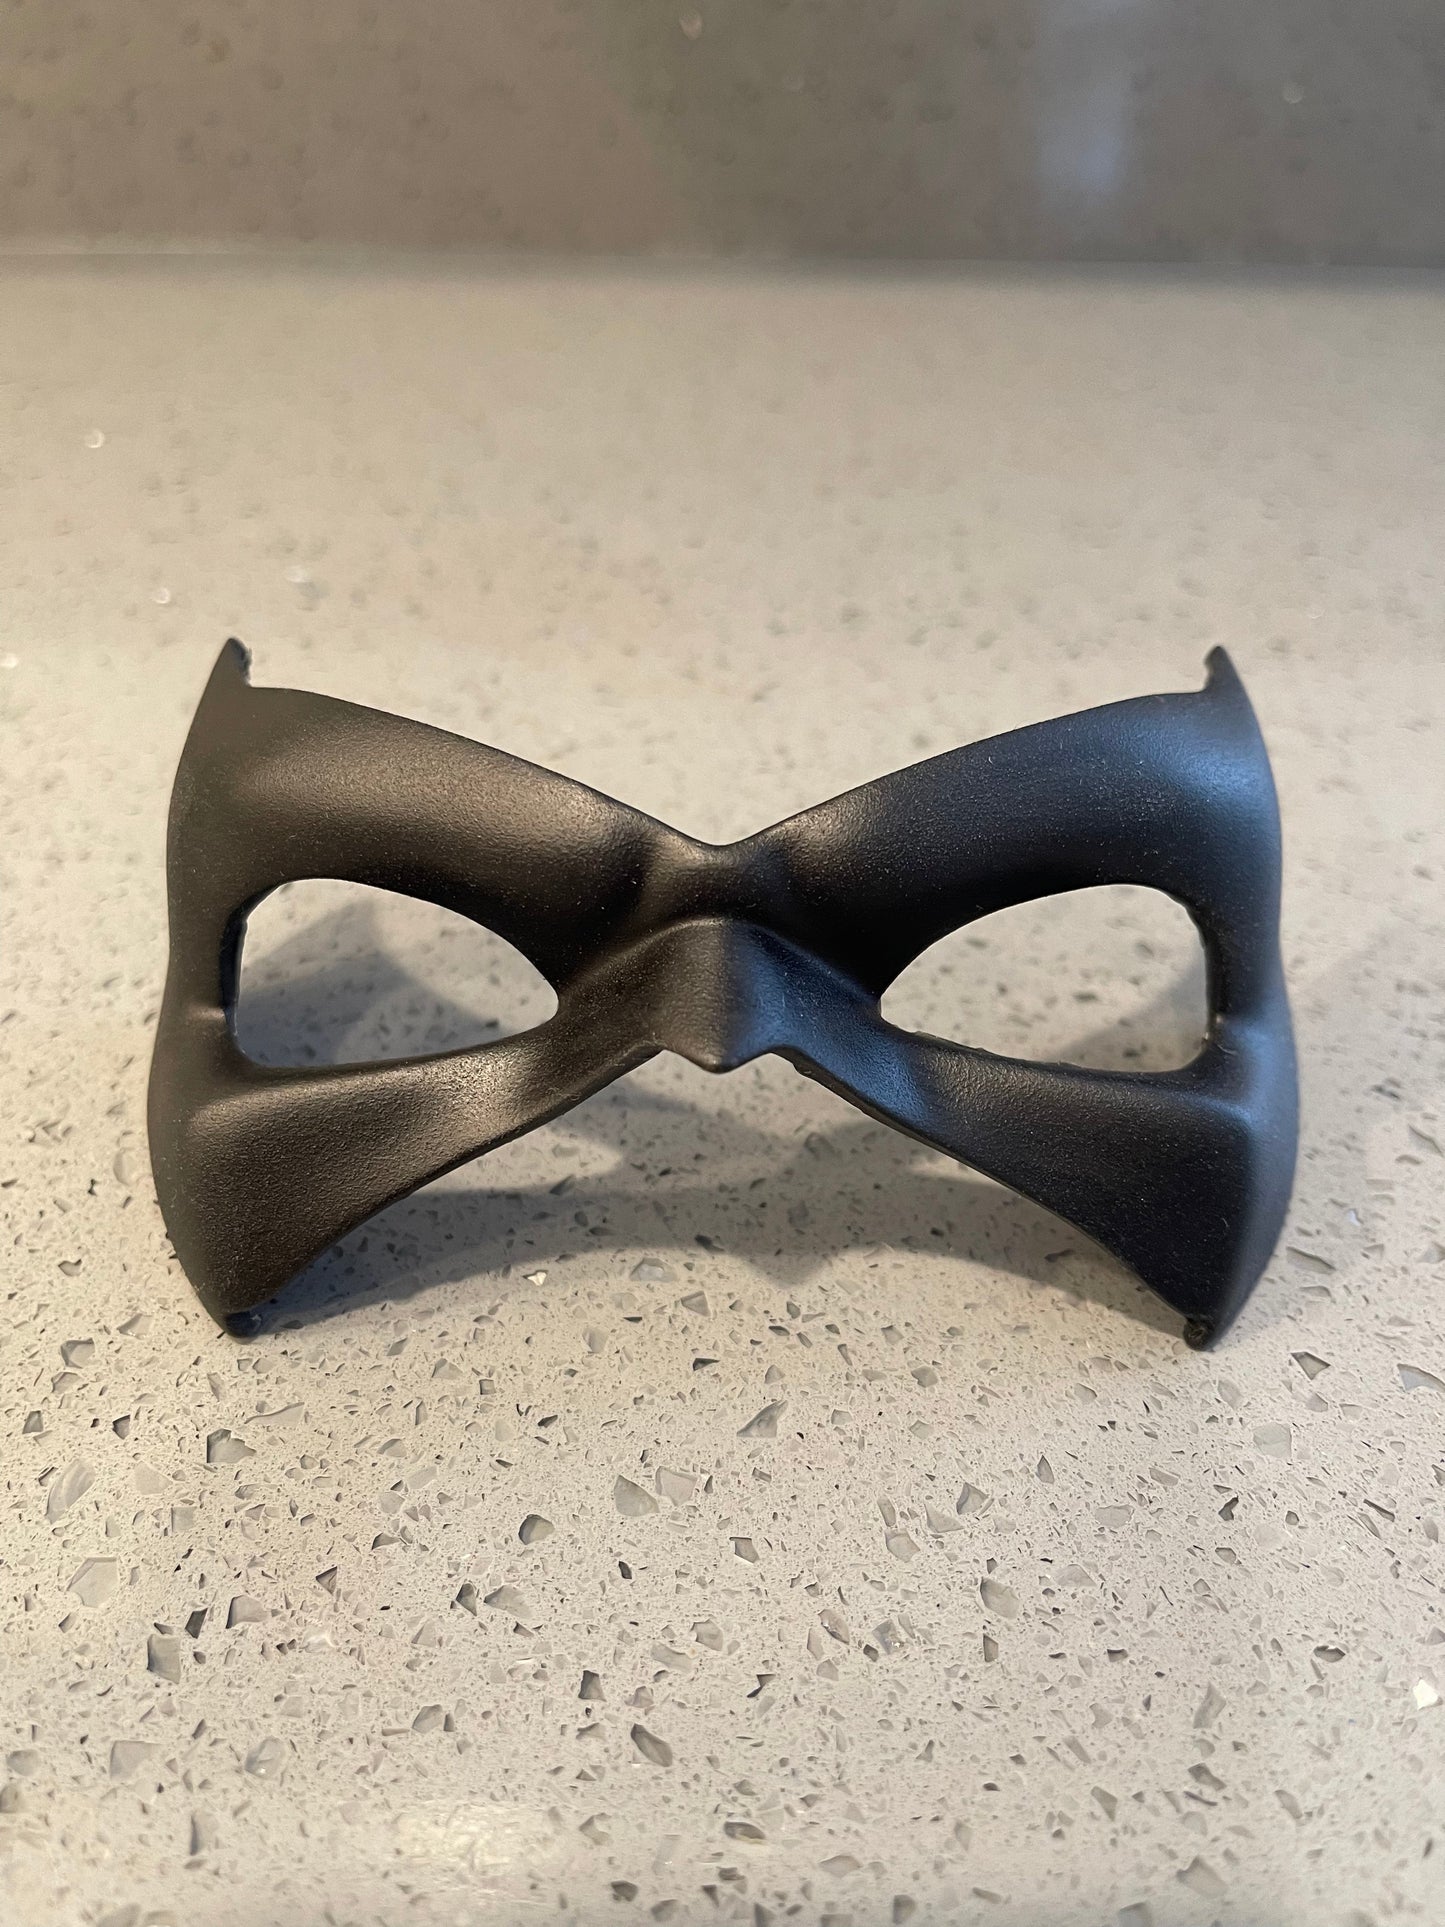 V1 Urethane Cosplay Domino Mask - UK SHIPPING PRICE